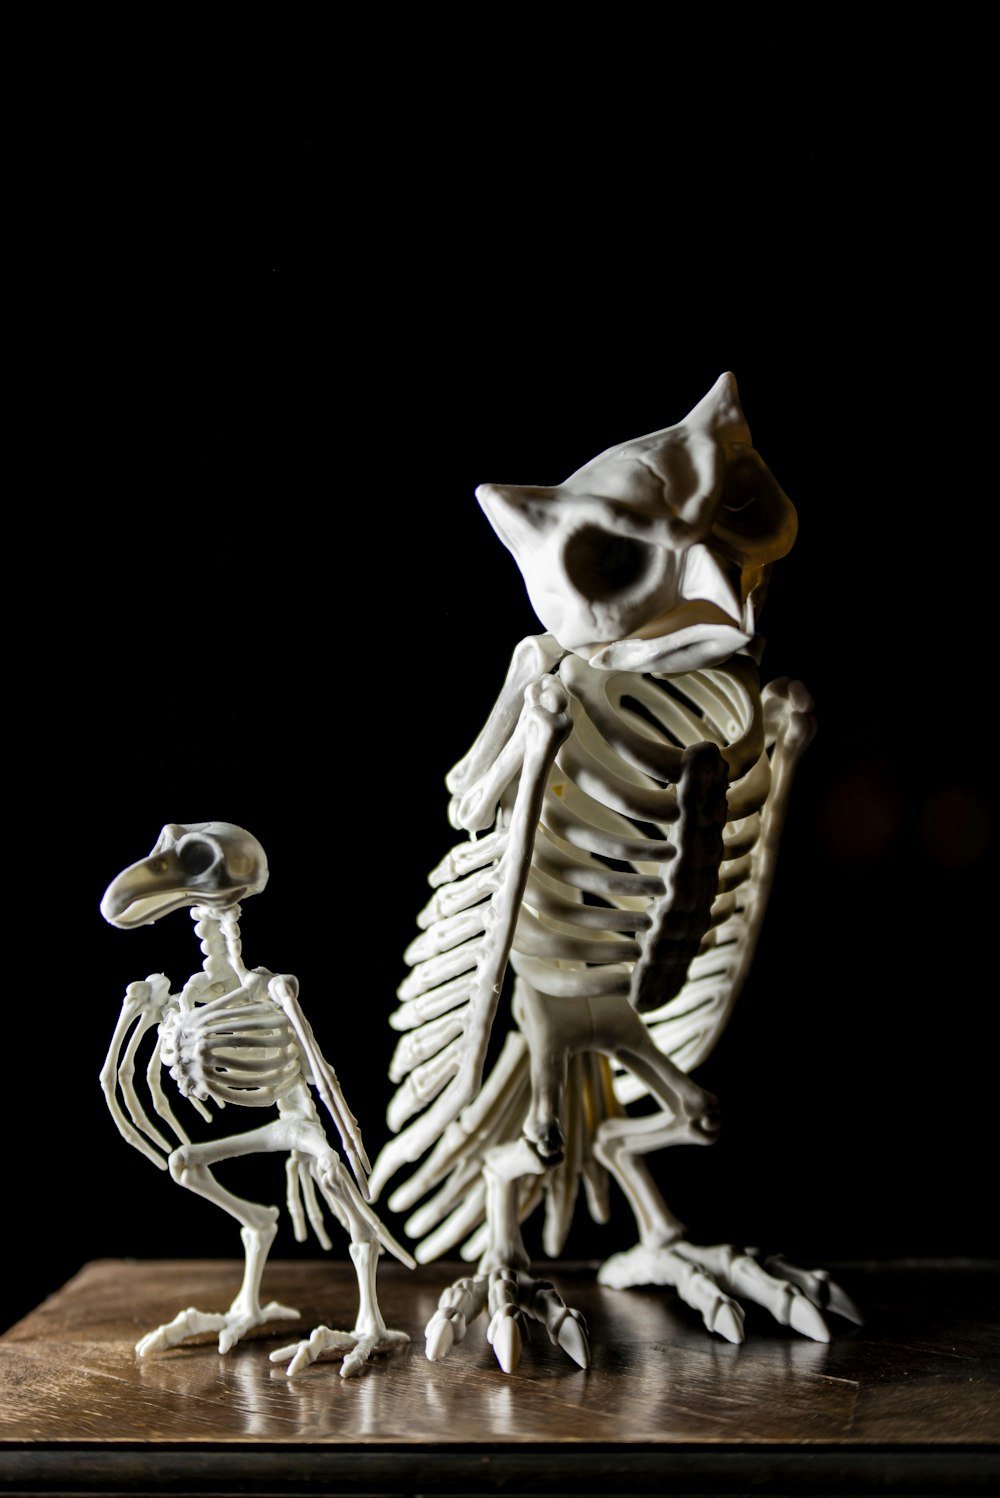 a skeleton of a bird